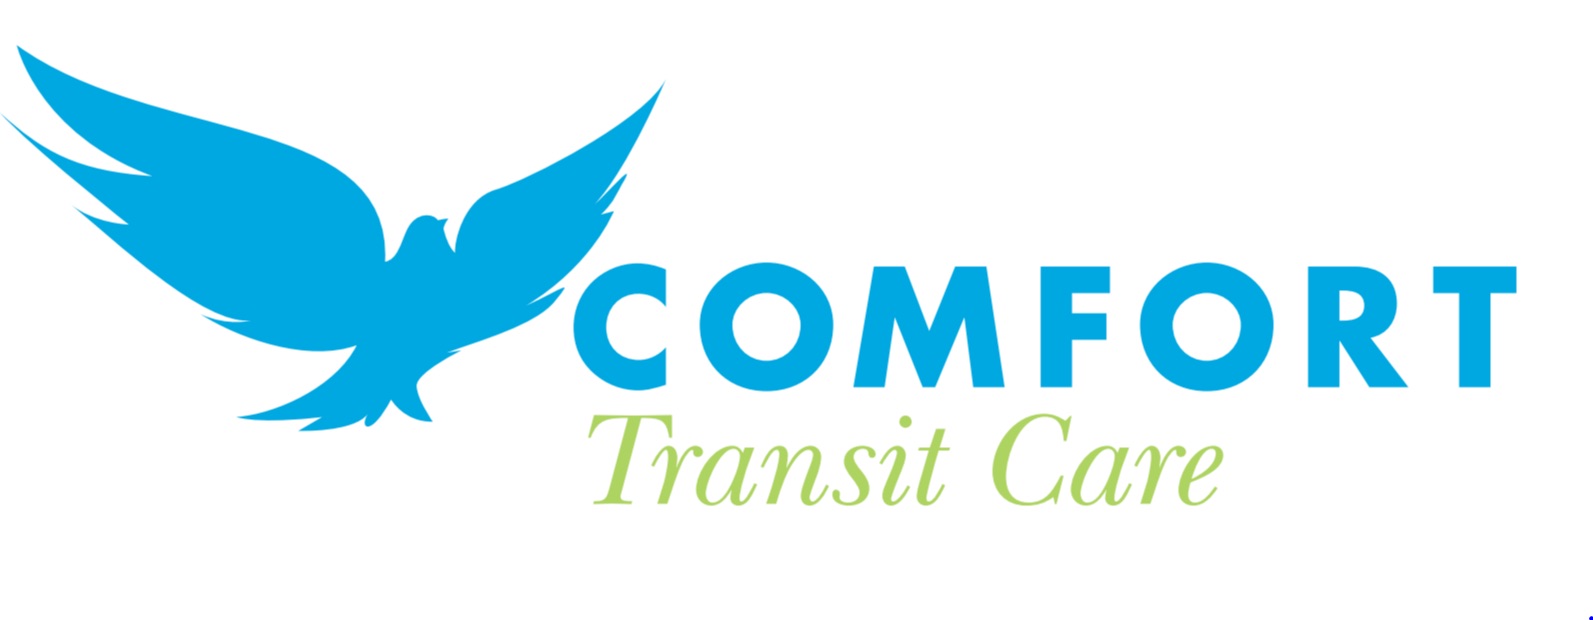 Comfort Transit Care - Comfort Transit Care